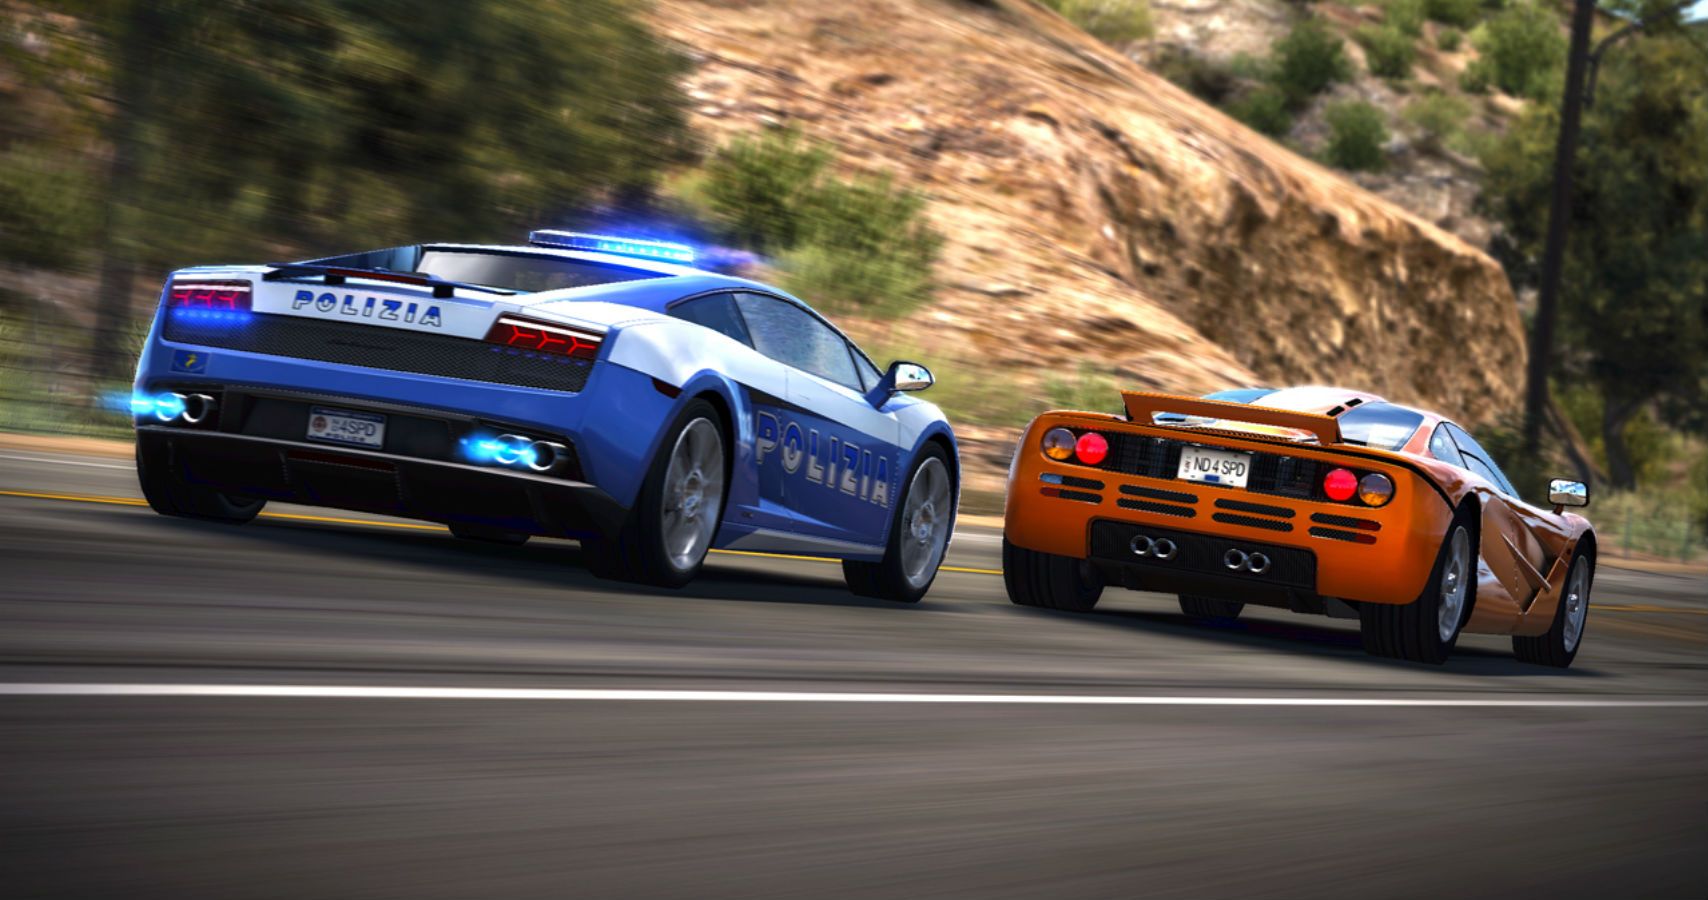 Нид фор спид хот персьют. Need for Speed: hot Pursuit (2010). Need for Speed hot Pursuit ремастер. Need for Speed hot Pursuit Remastered. Need for Speed hot Pursuit 2010 Limited Edition.